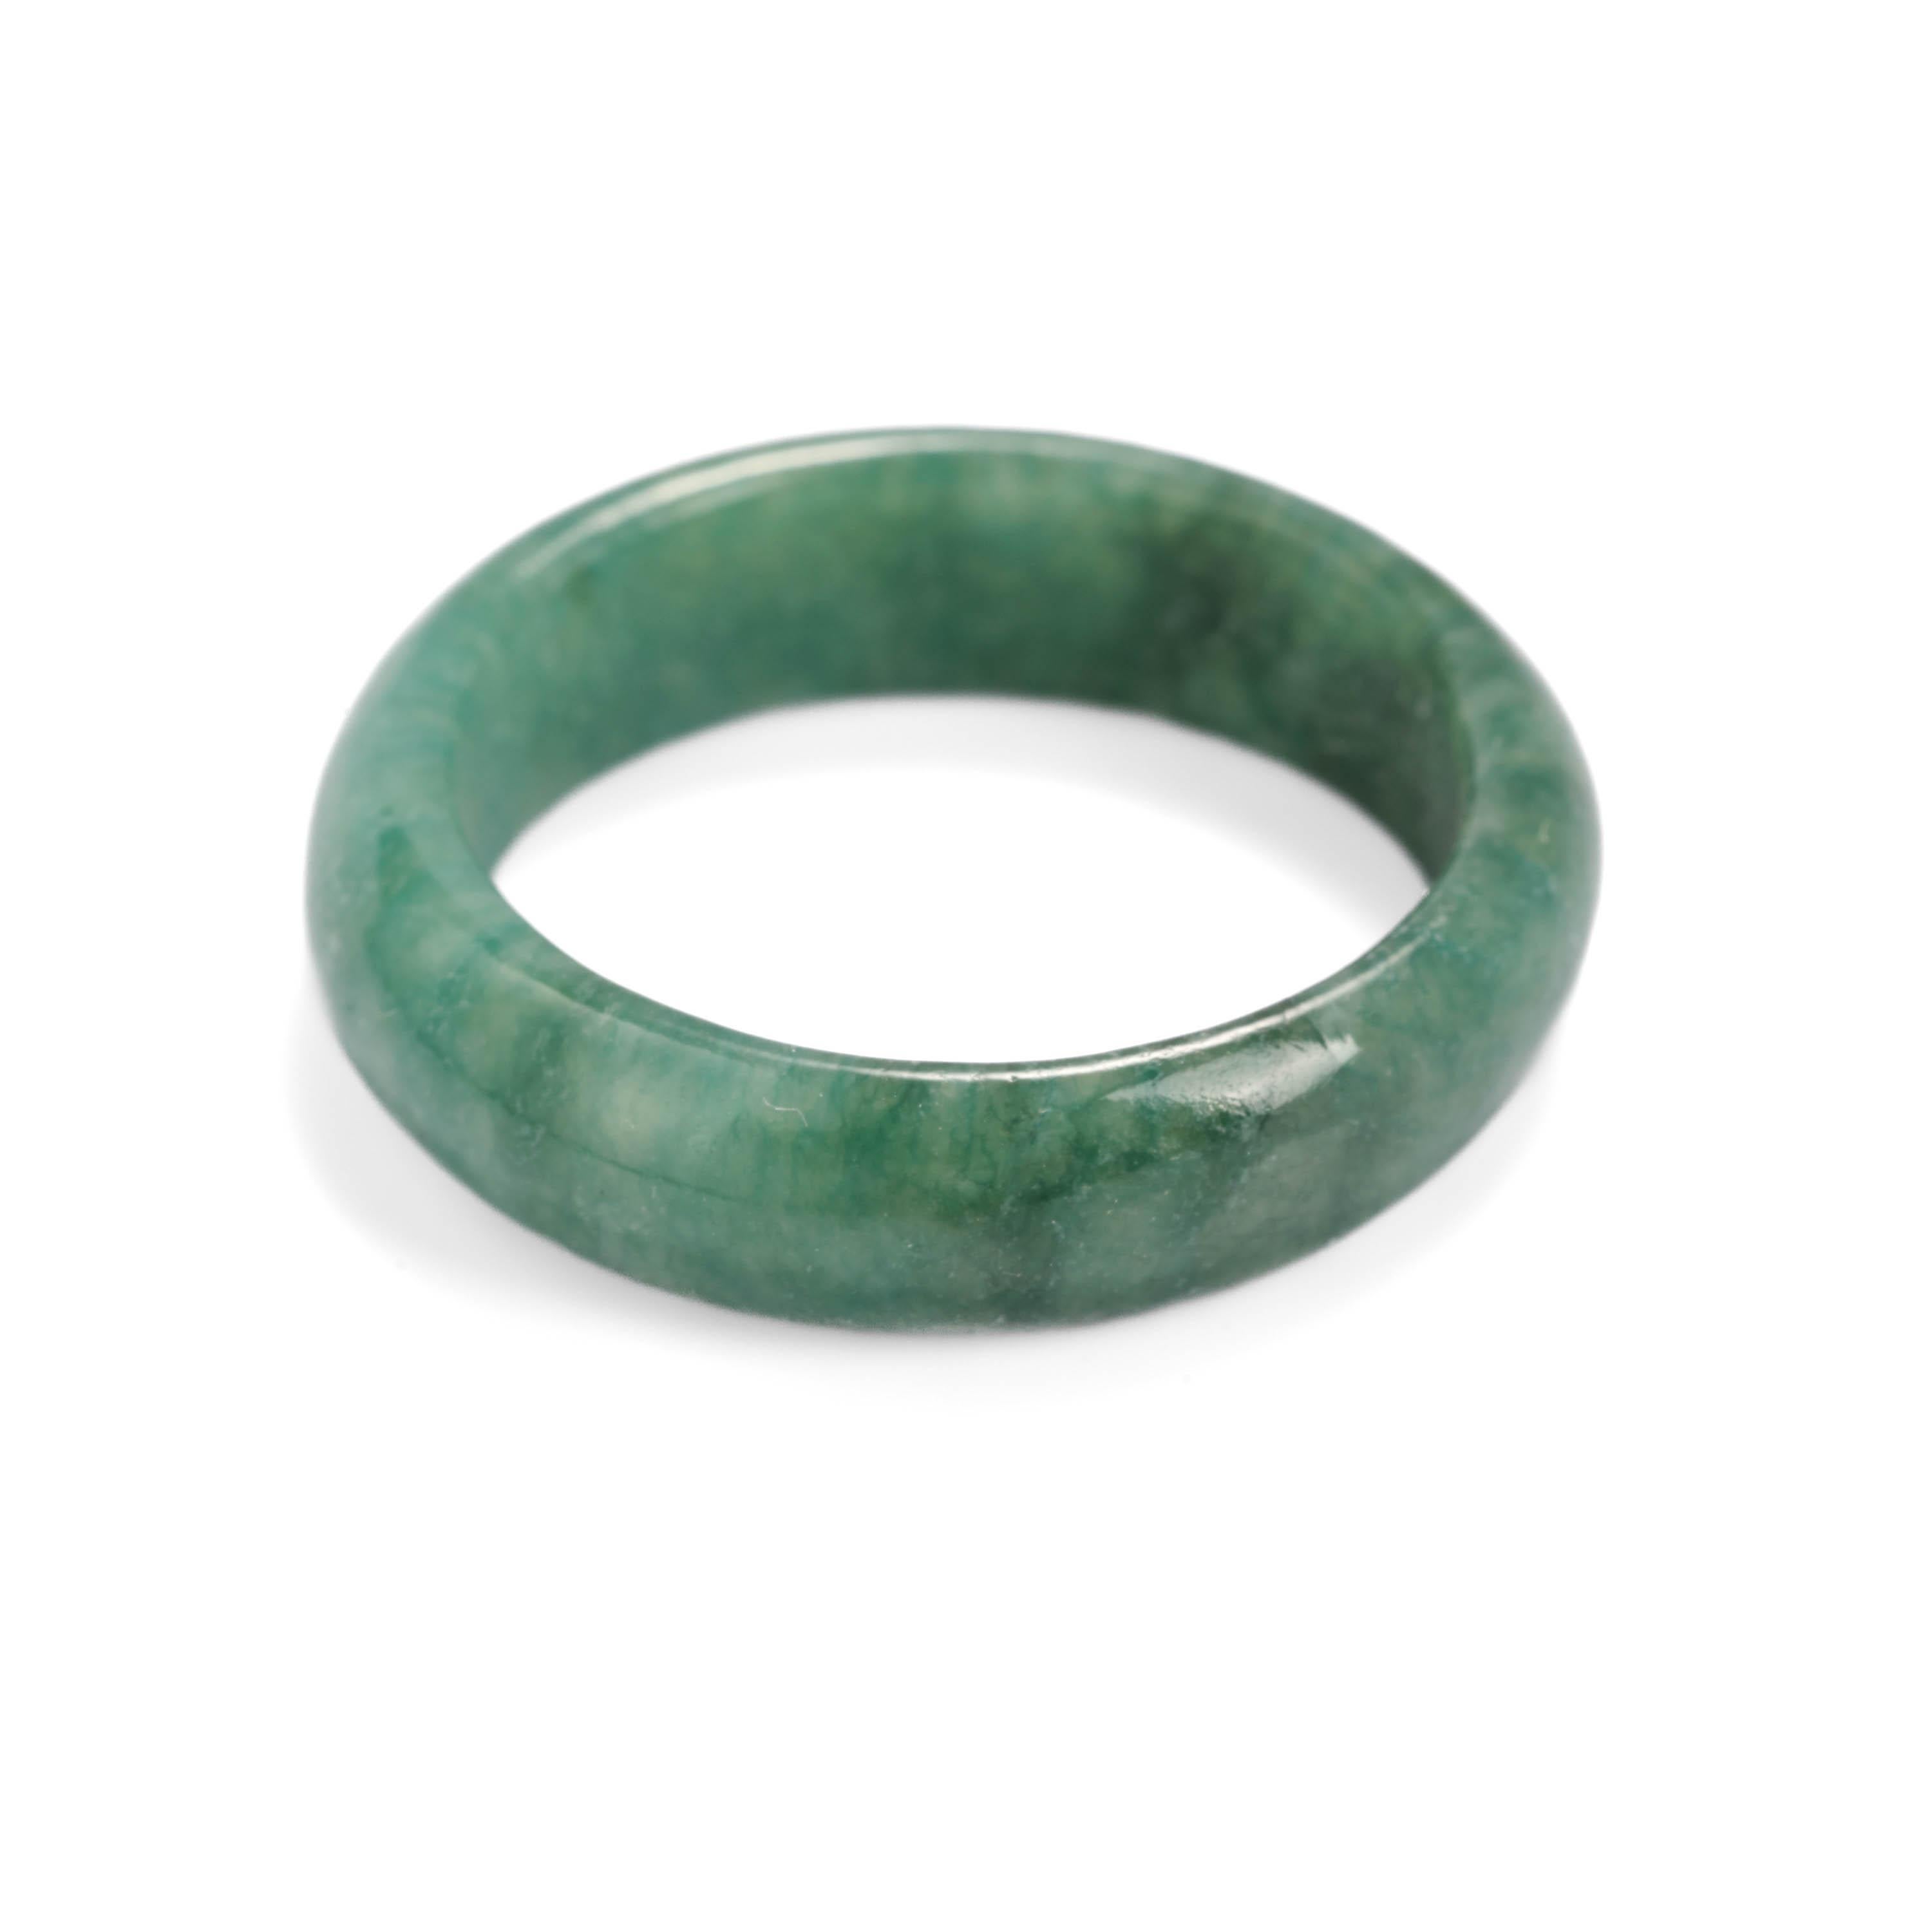 Ein sattes Grün mit einem Hauch von Blau - genau wie die feinsten Smaragde aus den legendären Minen Kolumbiens ist dies in der Tat ein seltener Fund. Ein handgeschnitztes Band aus reiner, natürlicher und unbehandelter Jadeit-Jade. Das leicht